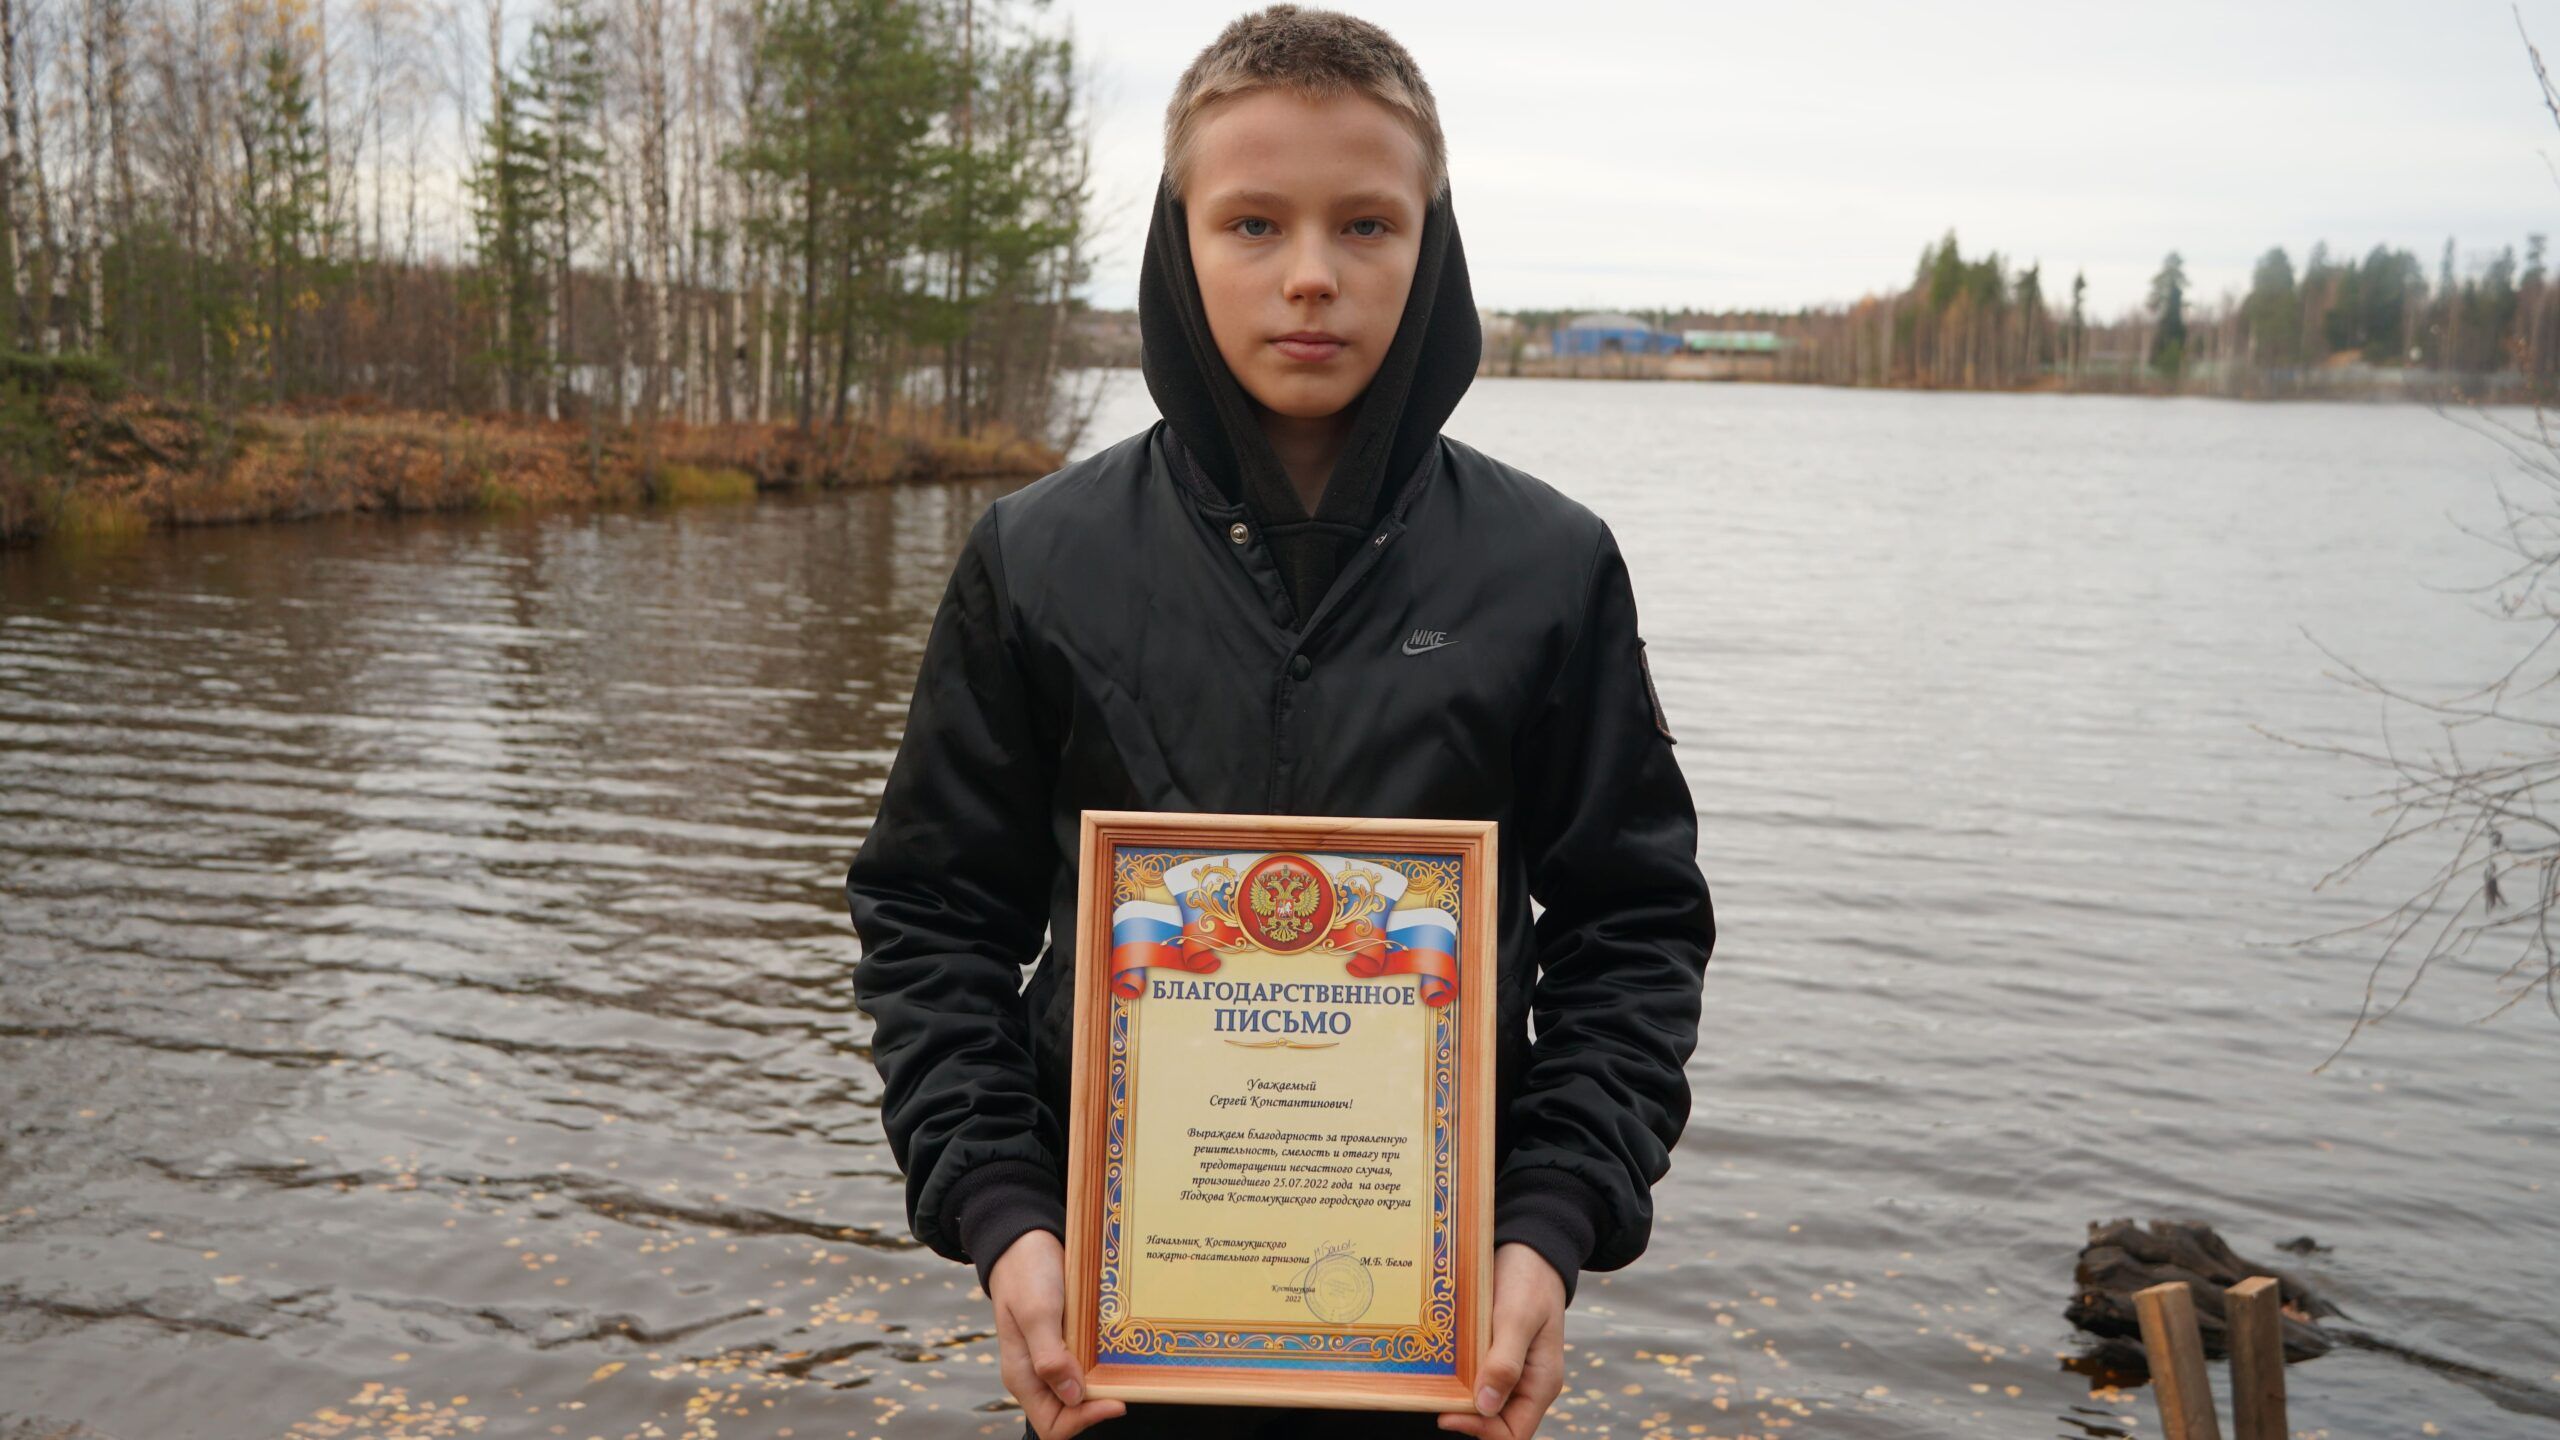 Школьника из Костомукши наградили медалью за спасение тонувшего друга с тяжелыми травмами